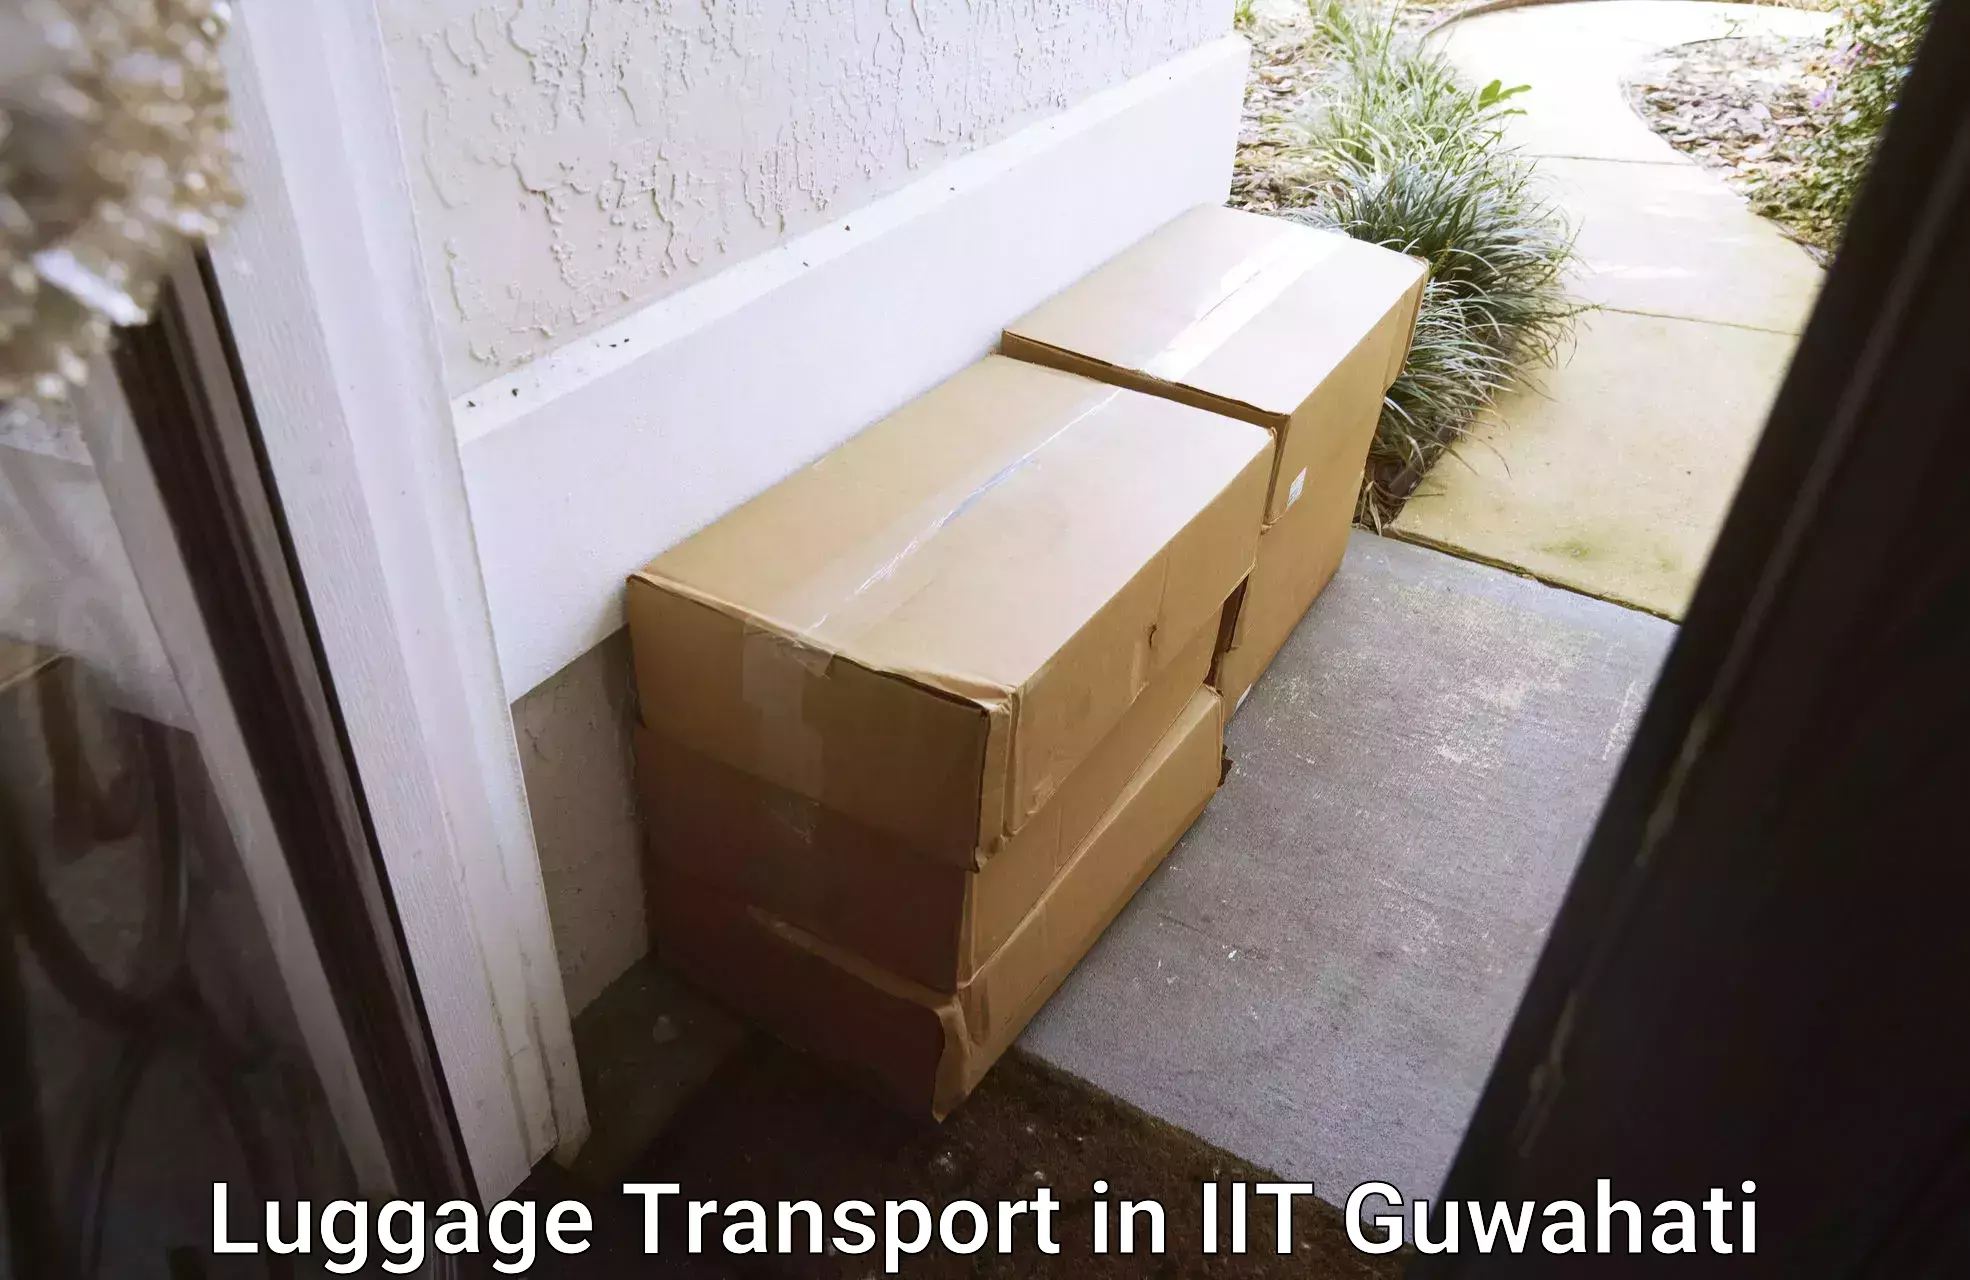 Baggage shipping service in IIT Guwahati